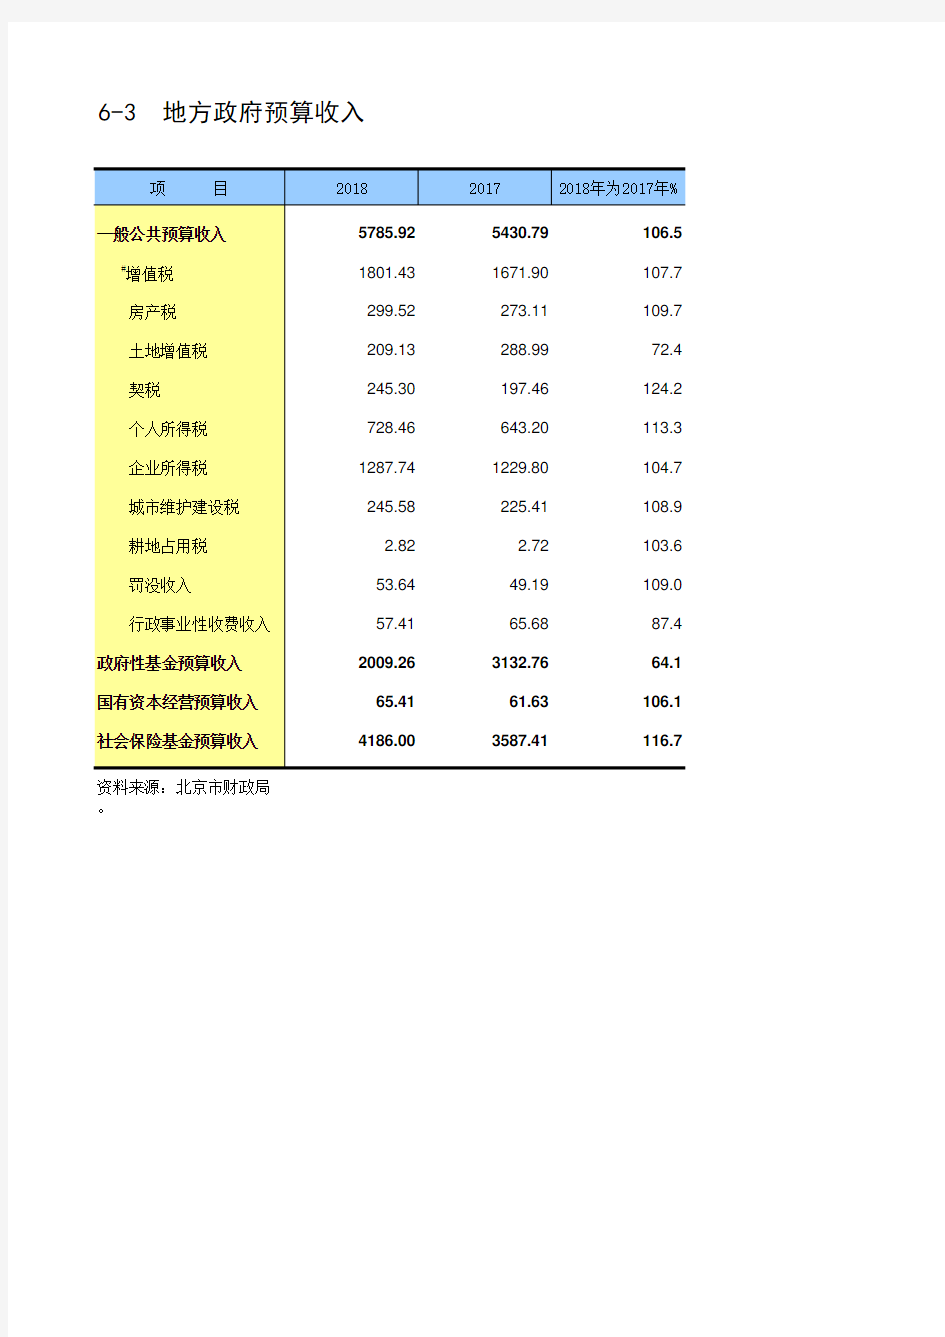 北京市社会经济发展数据：6-3 地方政府预算收入(2017-2018)